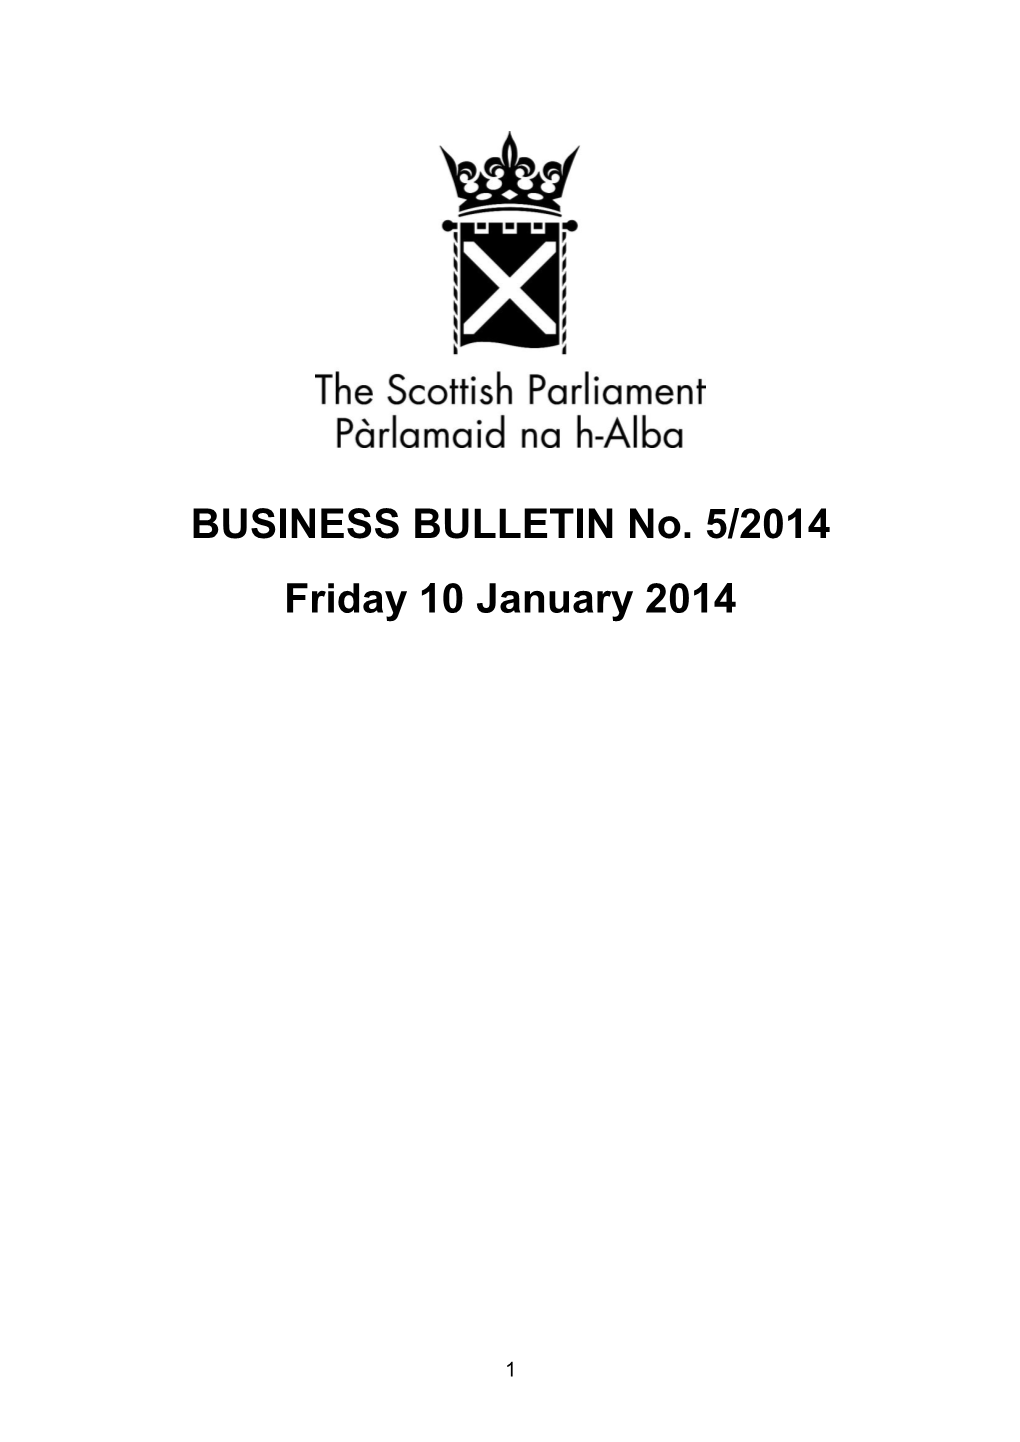 BUSINESS BULLETIN No. 5/2014 Friday 10 January 2014